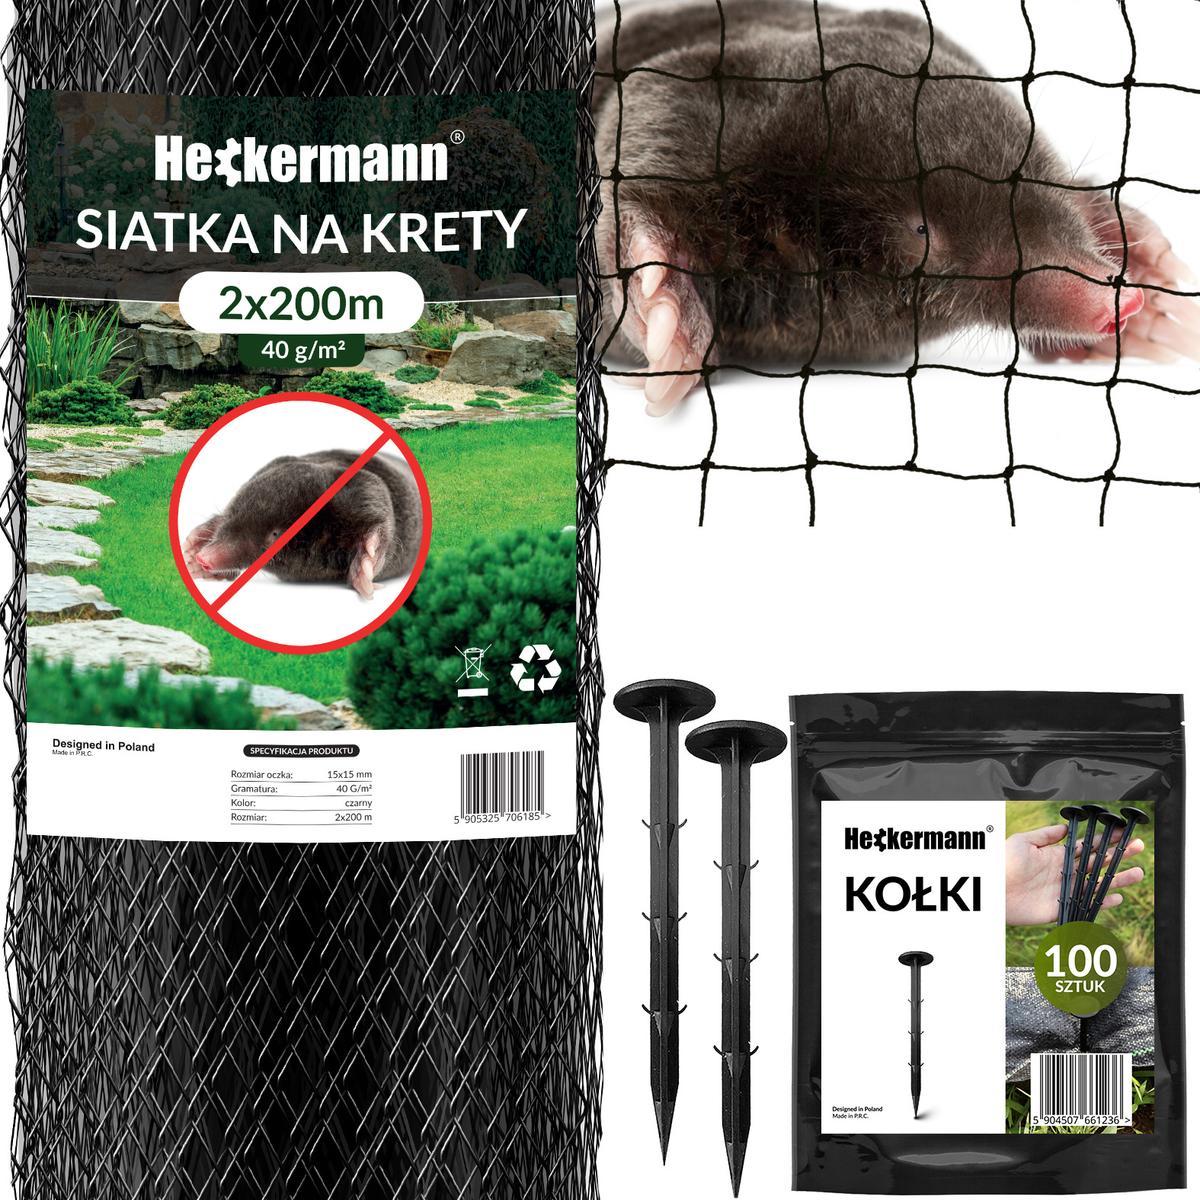 Zestaw Siatka na krety Heckermann 2x200m 40g/m2 + Kołki Czarne 100 szt nr. 1